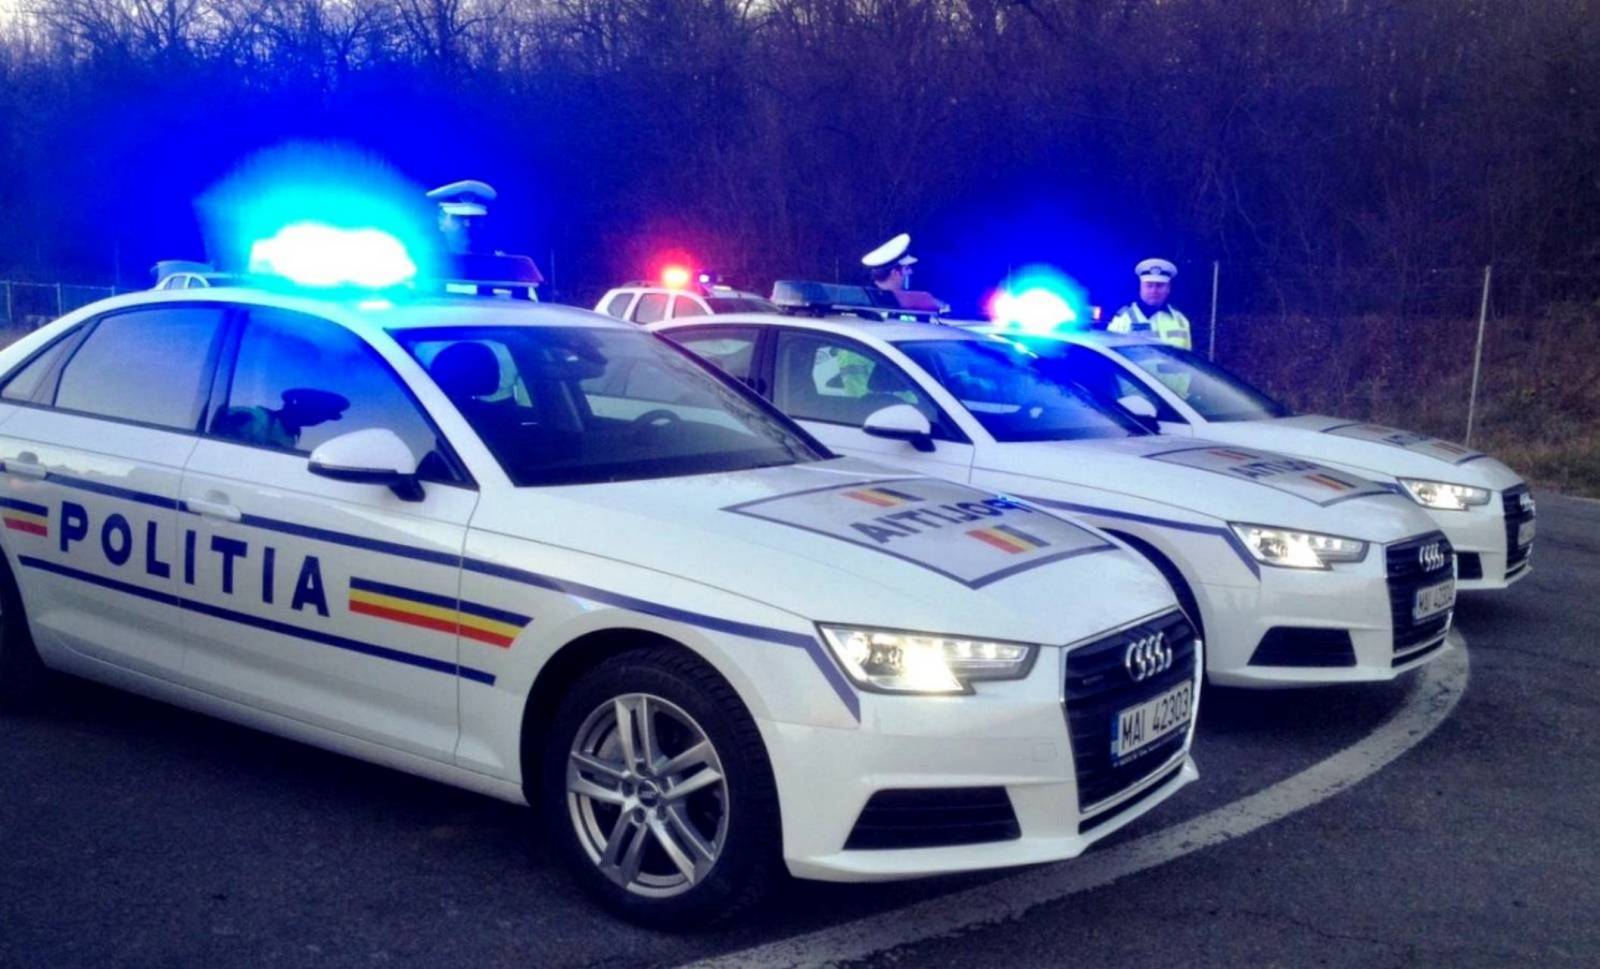 Policía rumana Advertencia muy importante para el Black Friday 2020